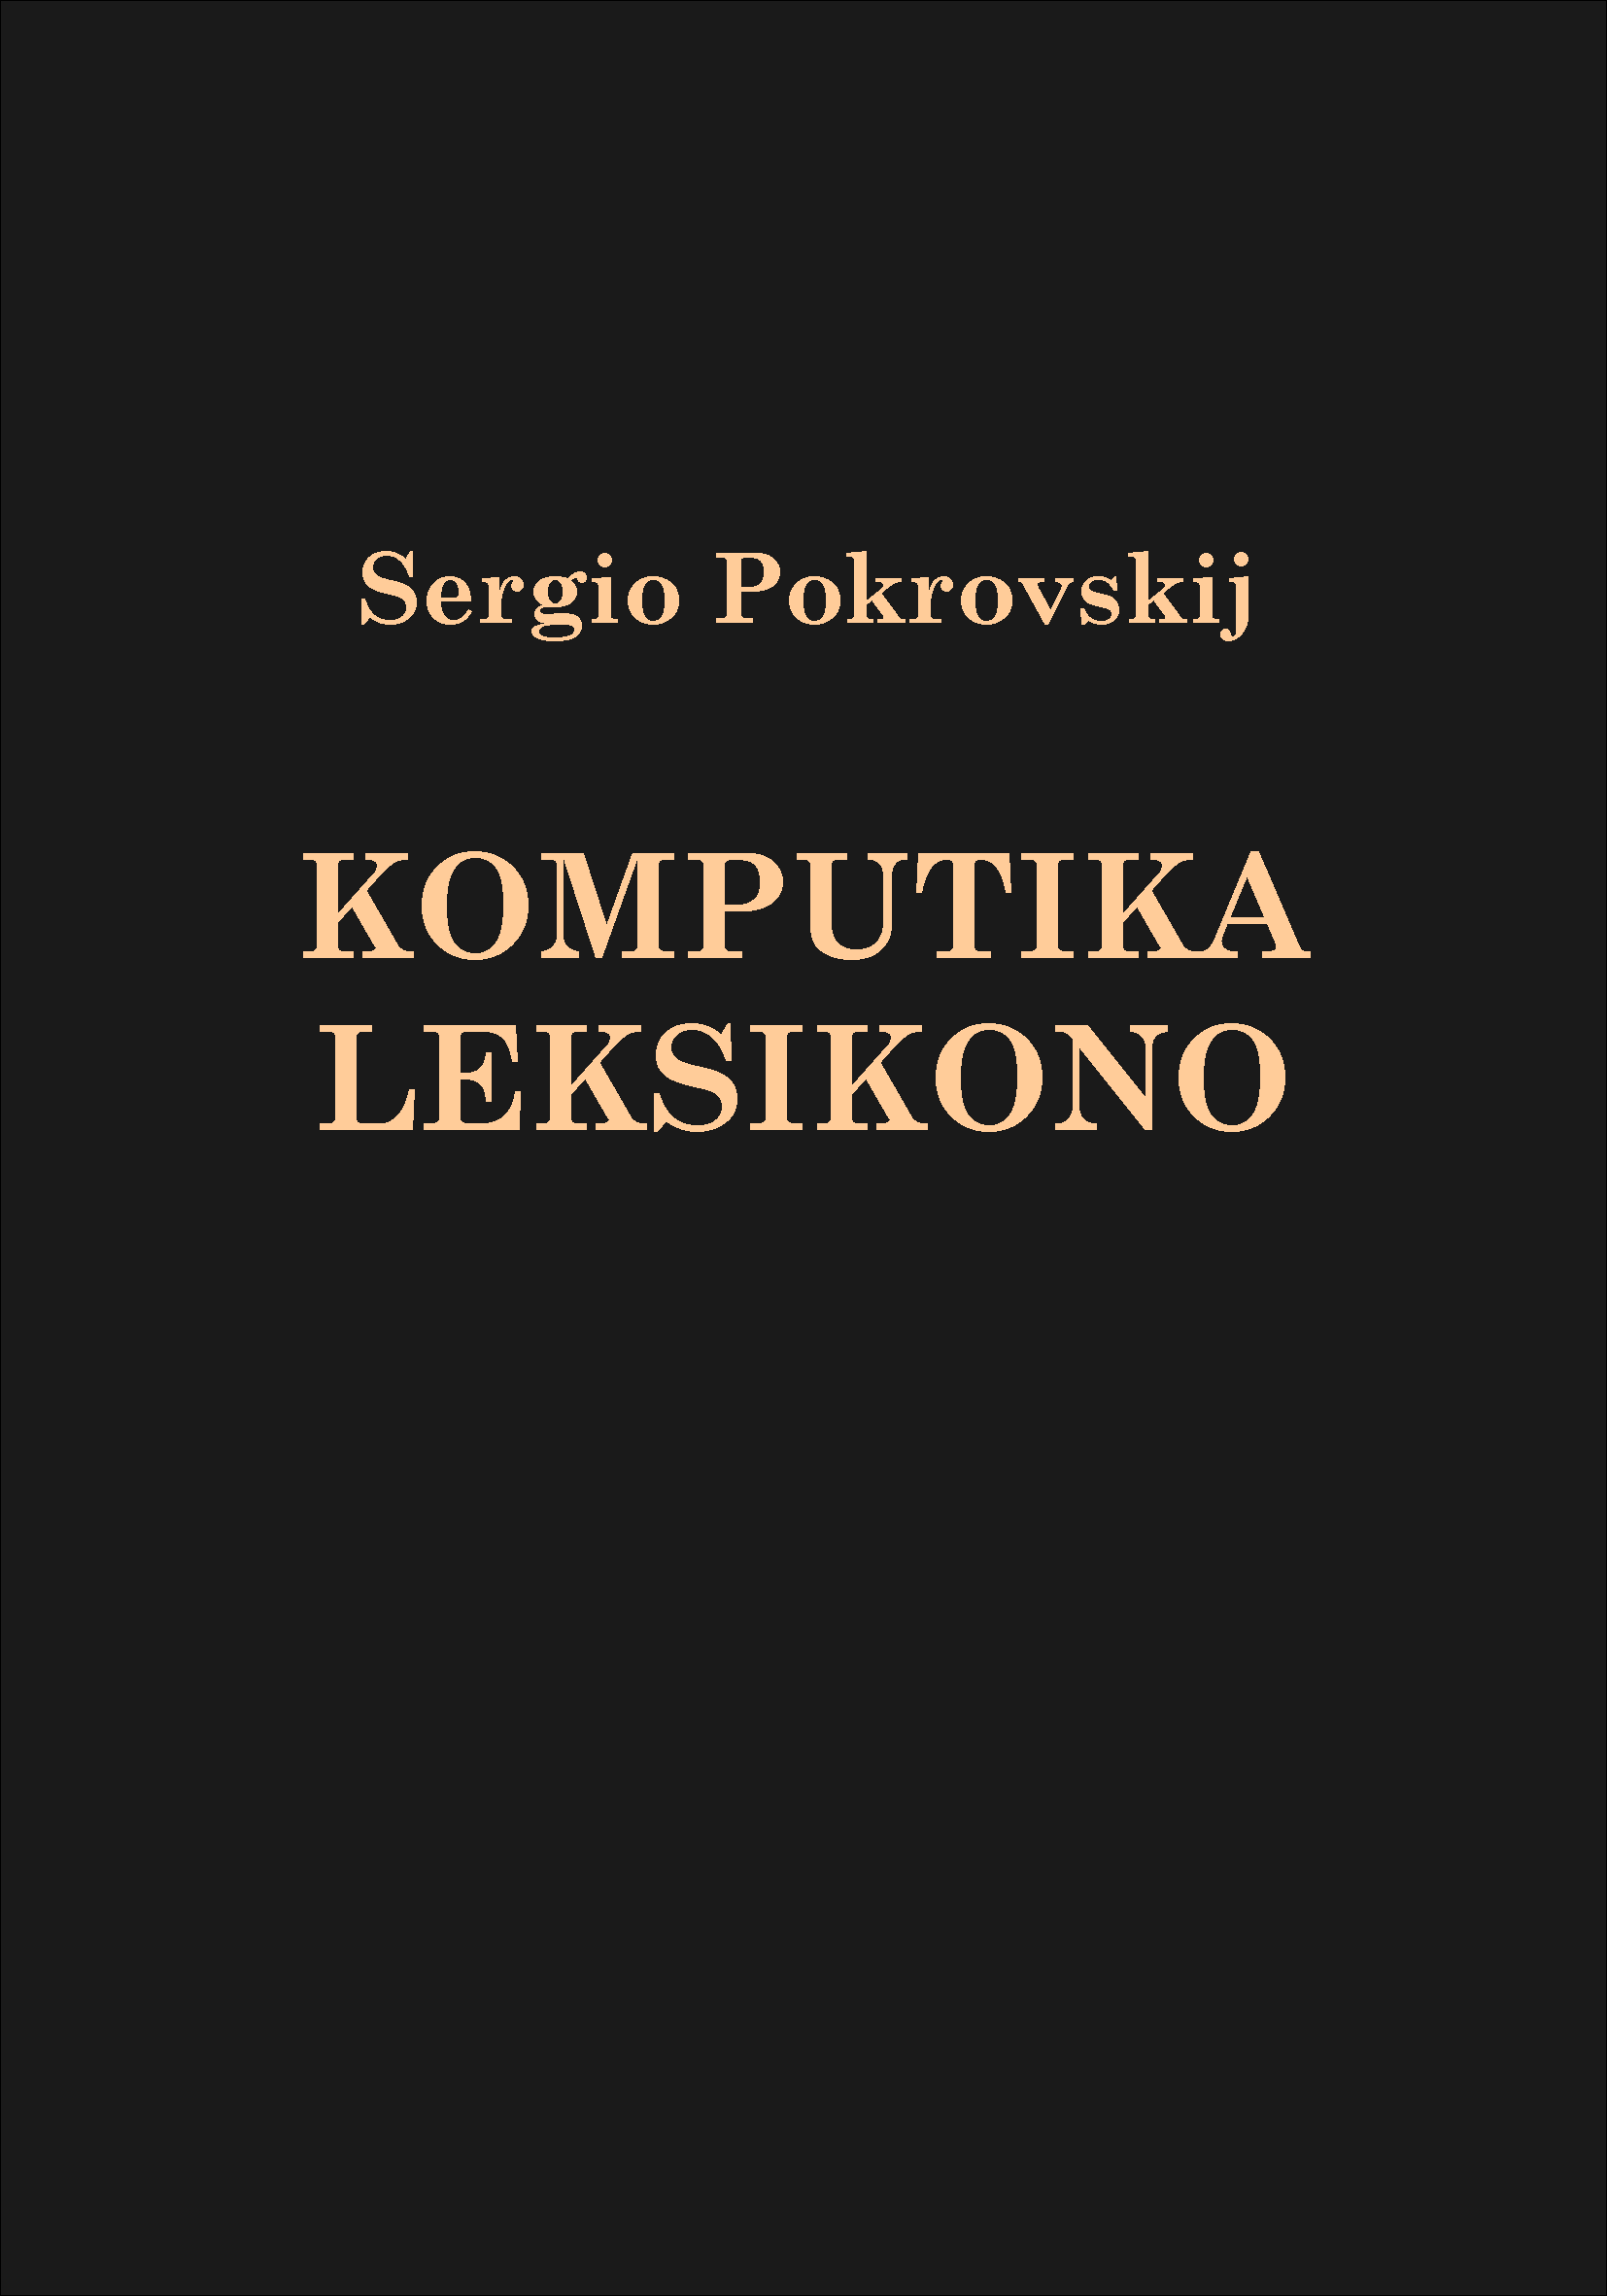 Komputika Leksikono de Sergio Pokrovskij